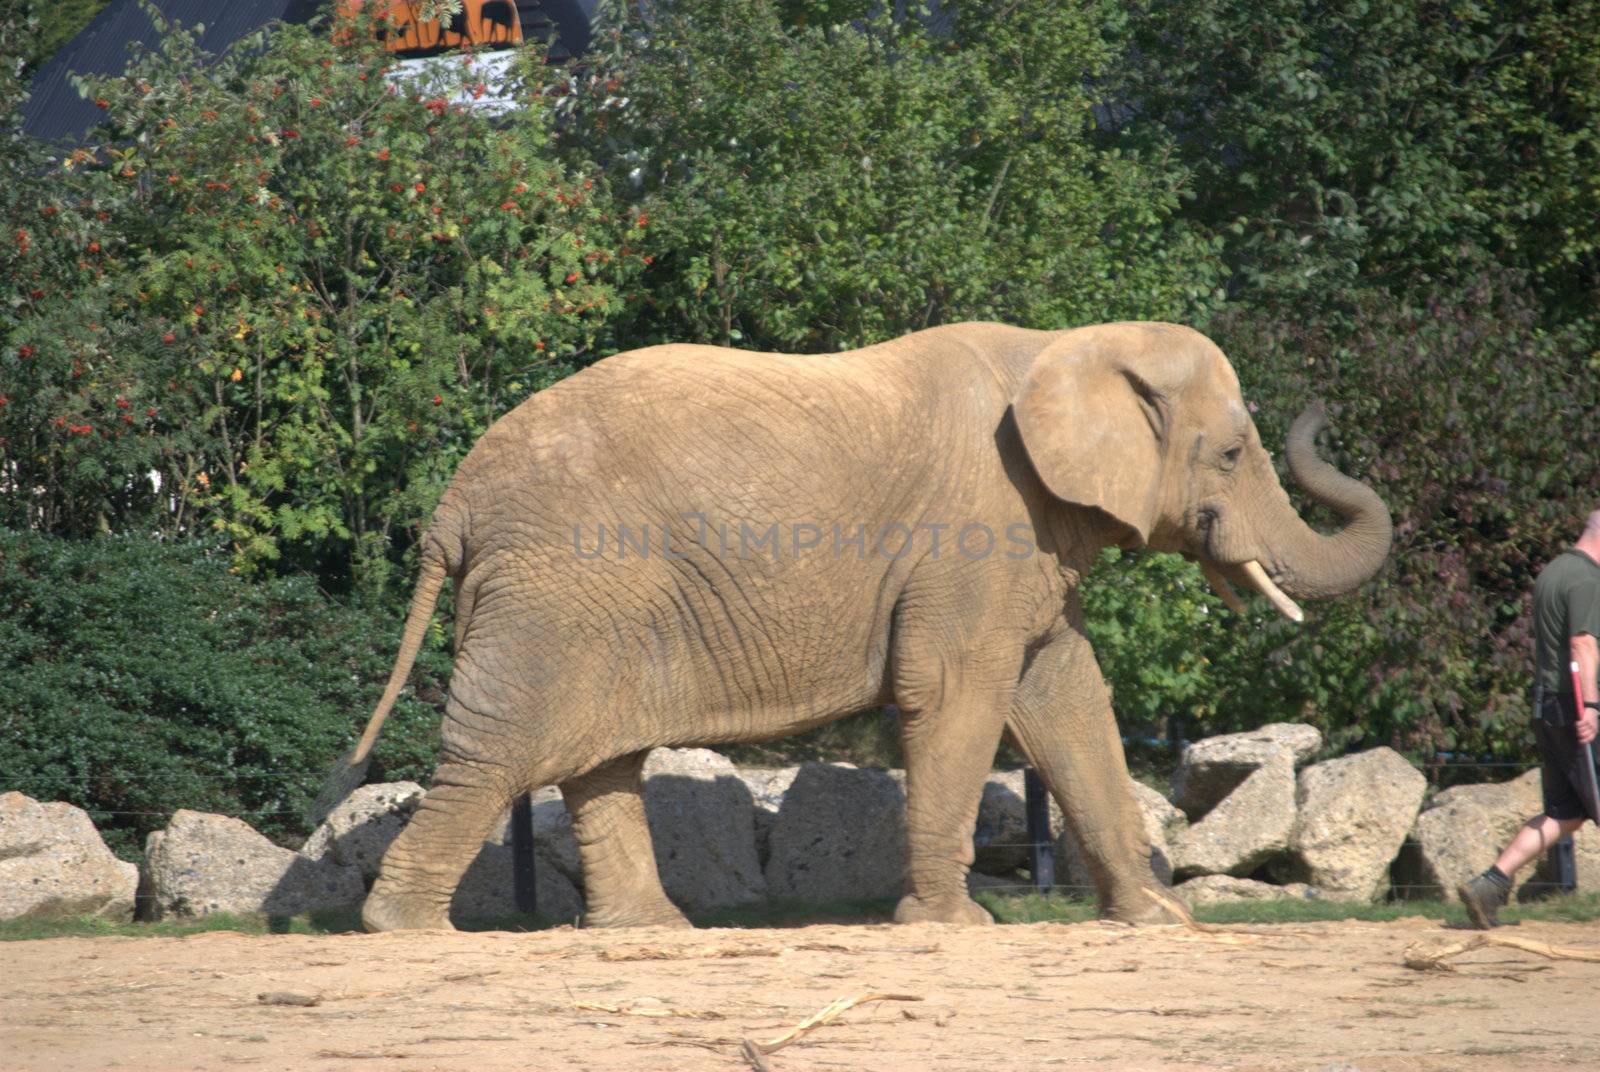 Walking elephant by pauws99